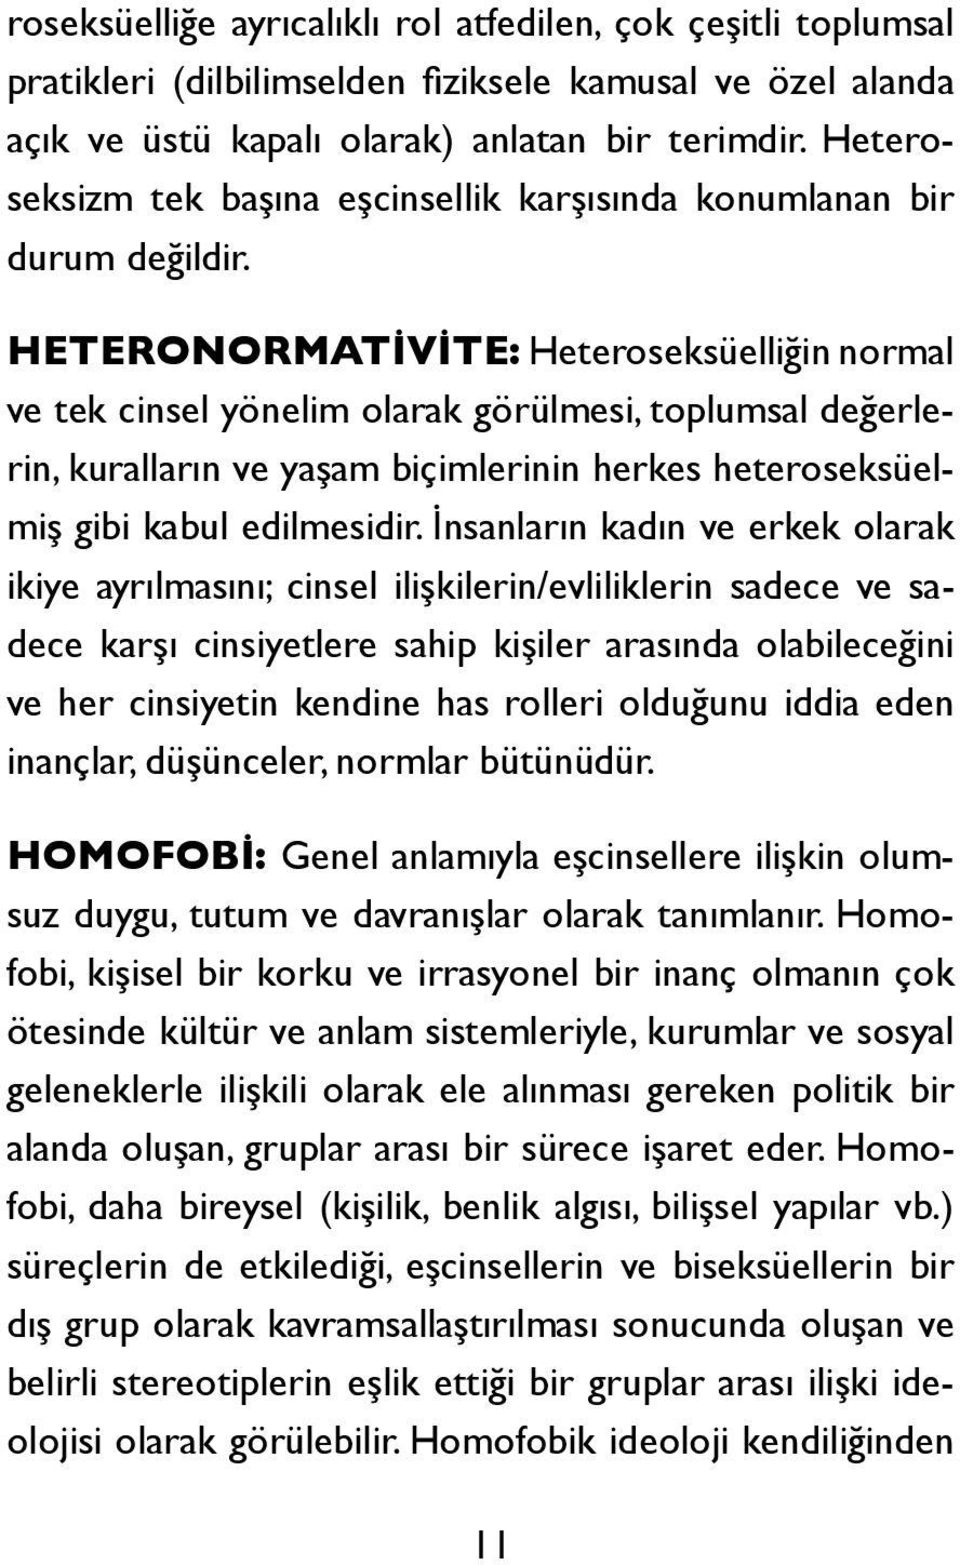 HETERONORMATİVİTE: Heteroseksüelliğin normal ve tek cinsel yönelim olarak görülmesi, toplumsal değerlerin, kuralların ve yaşam biçimlerinin herkes heteroseksüelmiş gibi kabul edilmesidir.